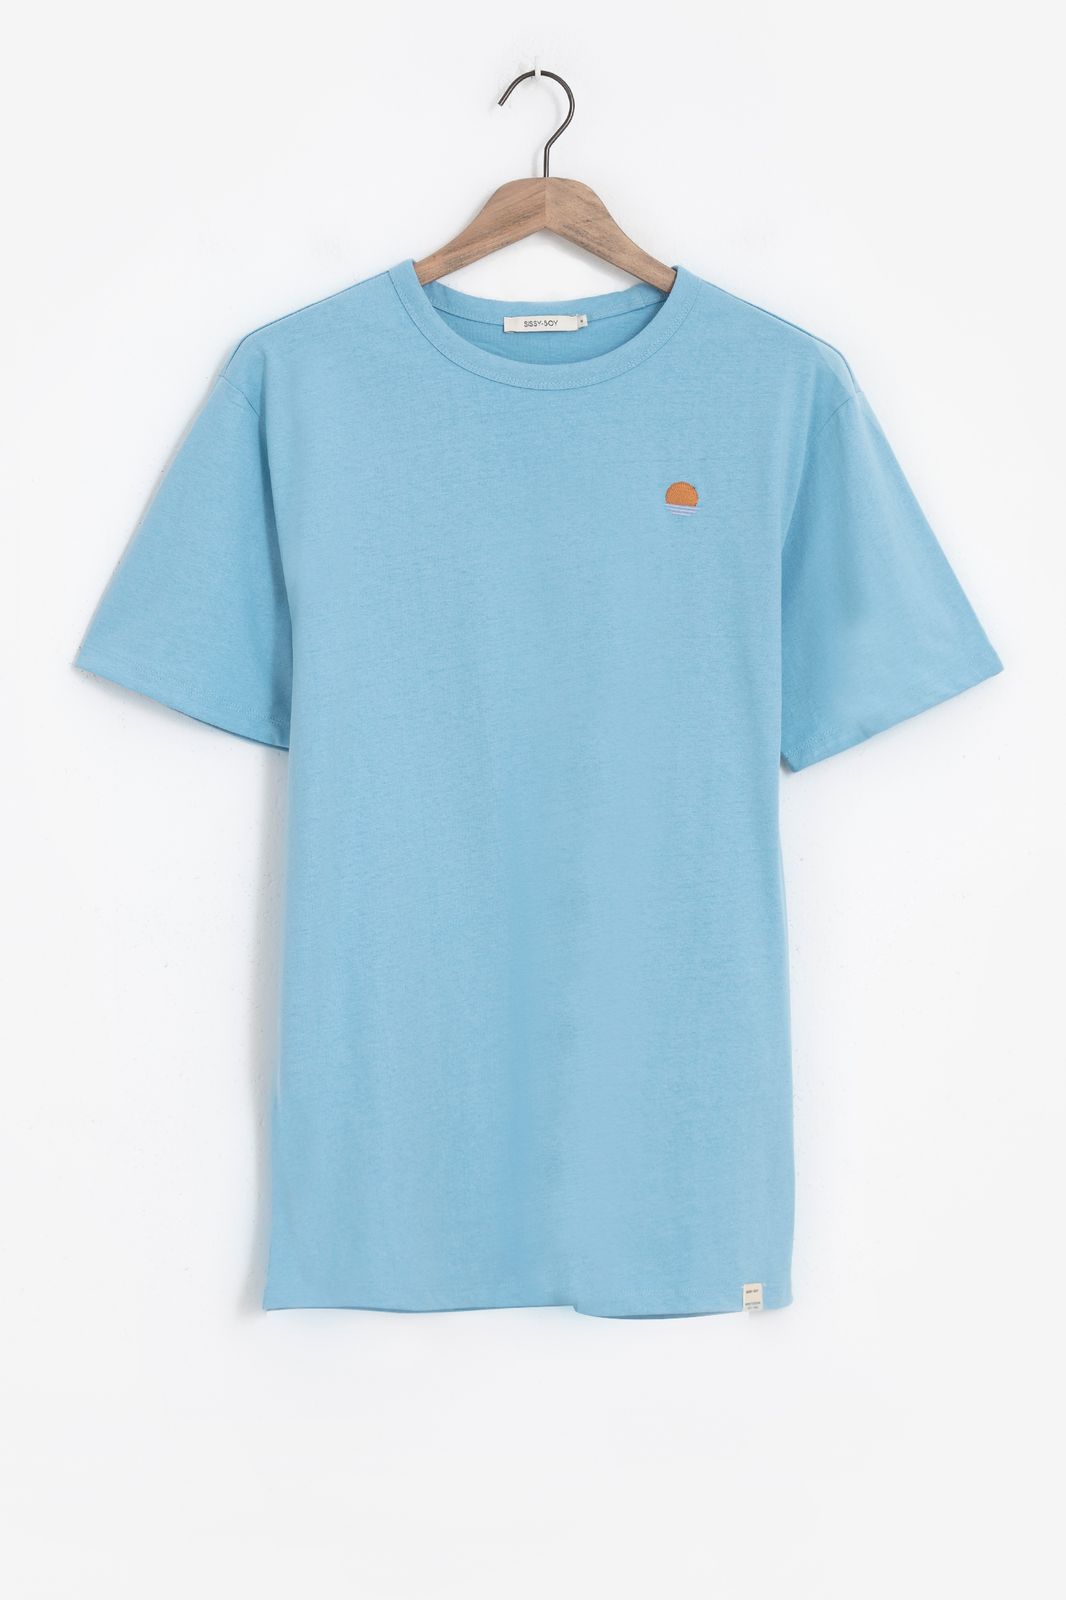 Baumwoll-Shirt mit Stickerei - blau